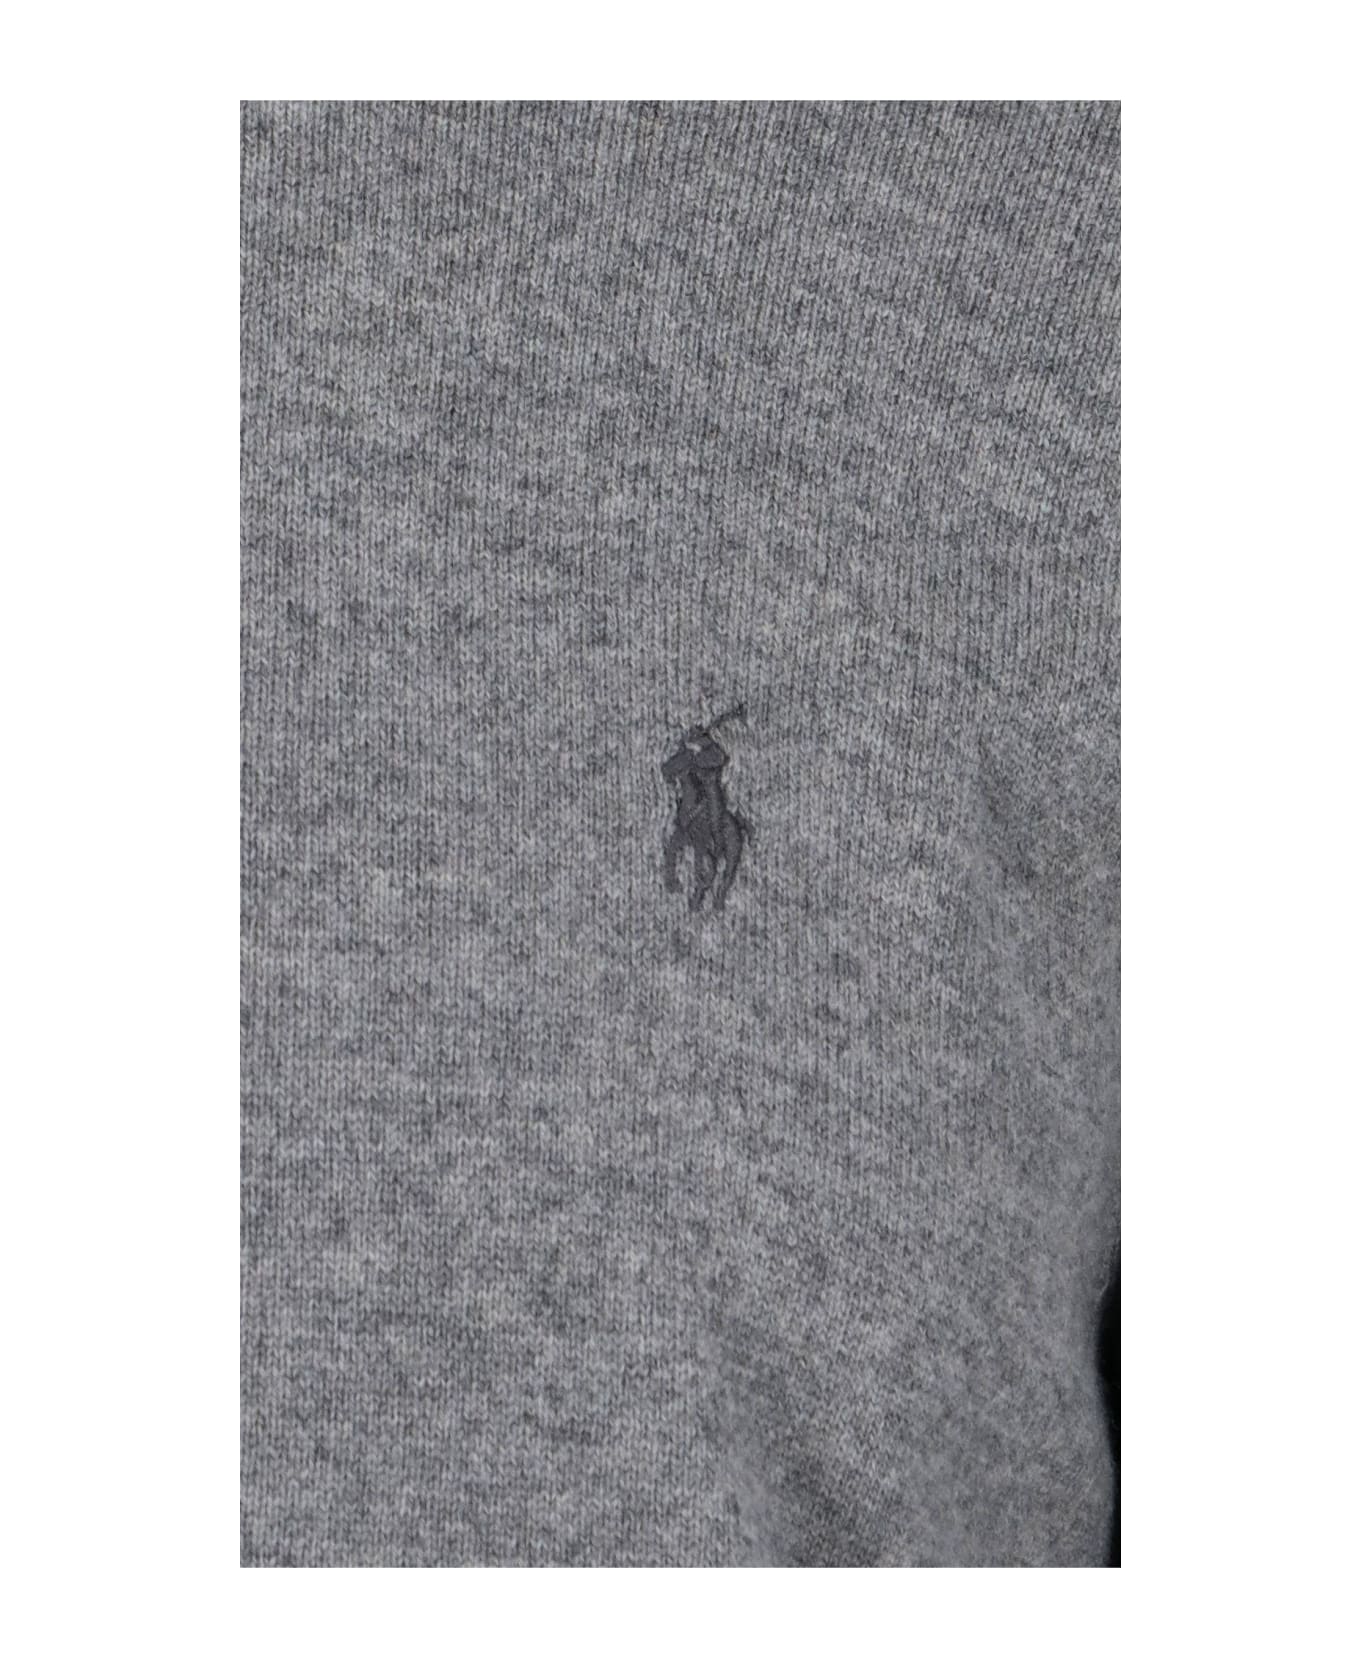 Polo Ralph Lauren Logo Sweater